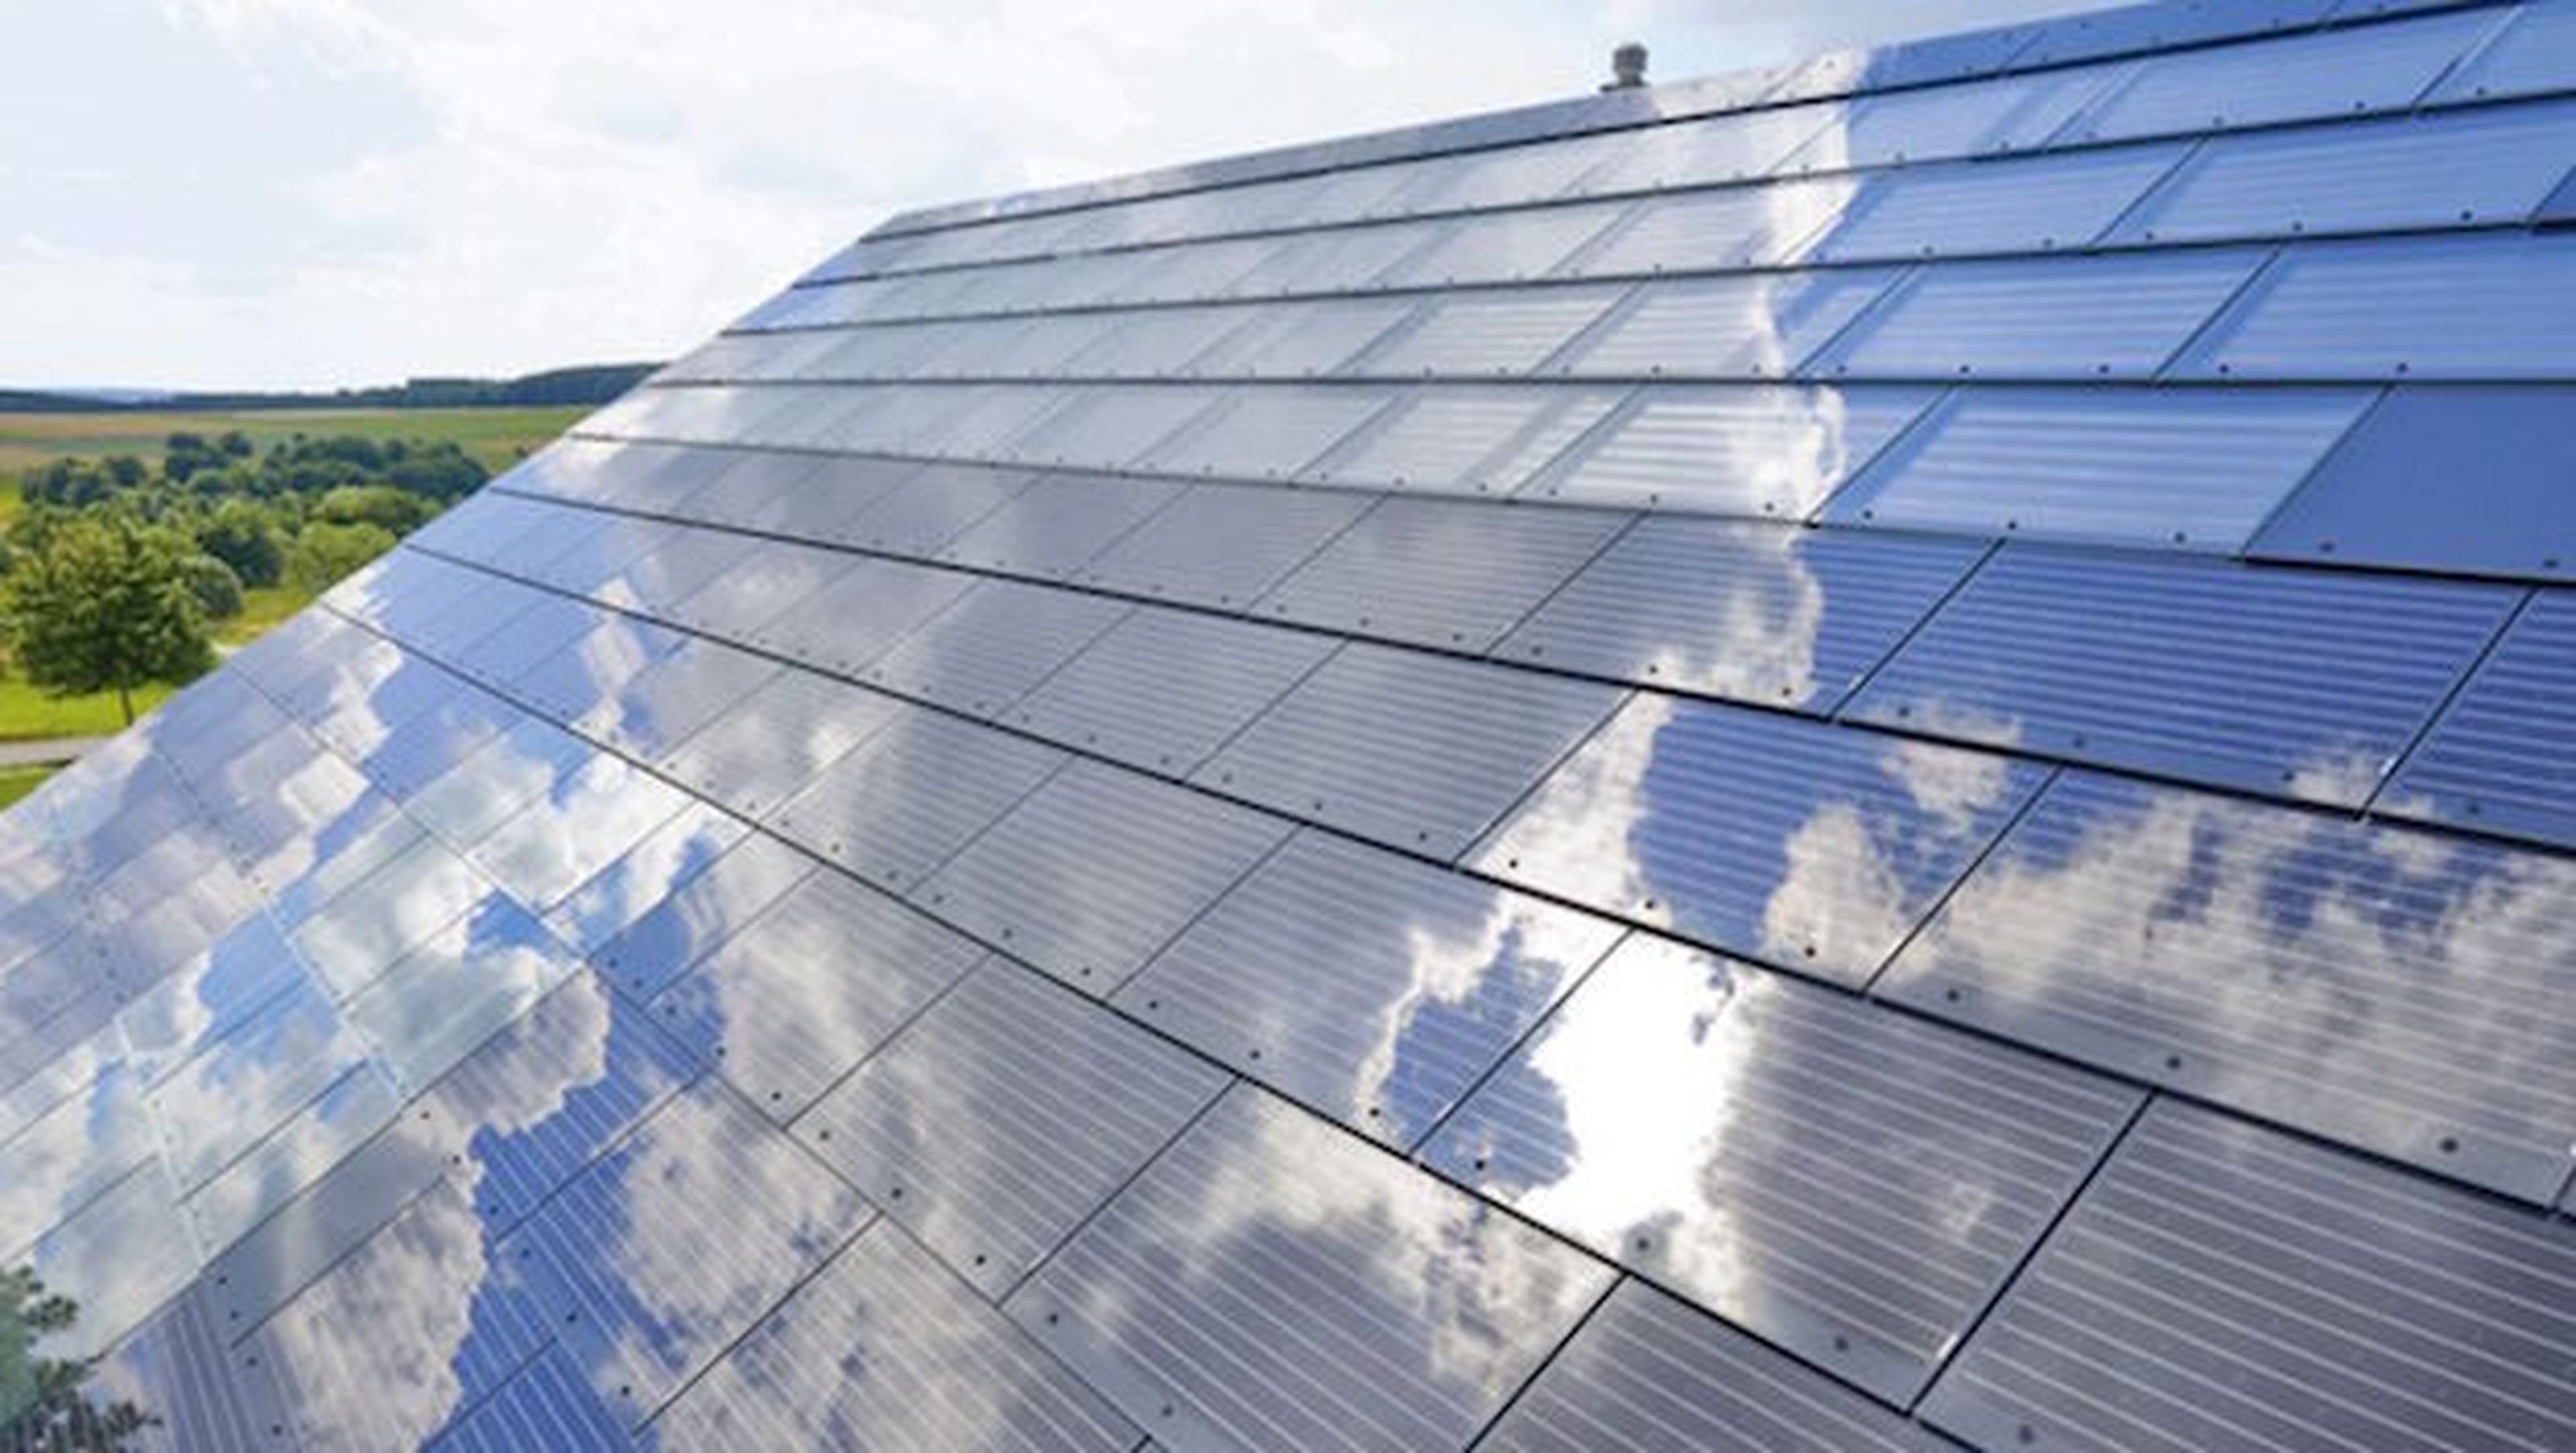 SolarCity planea techos hechos de paneles solares